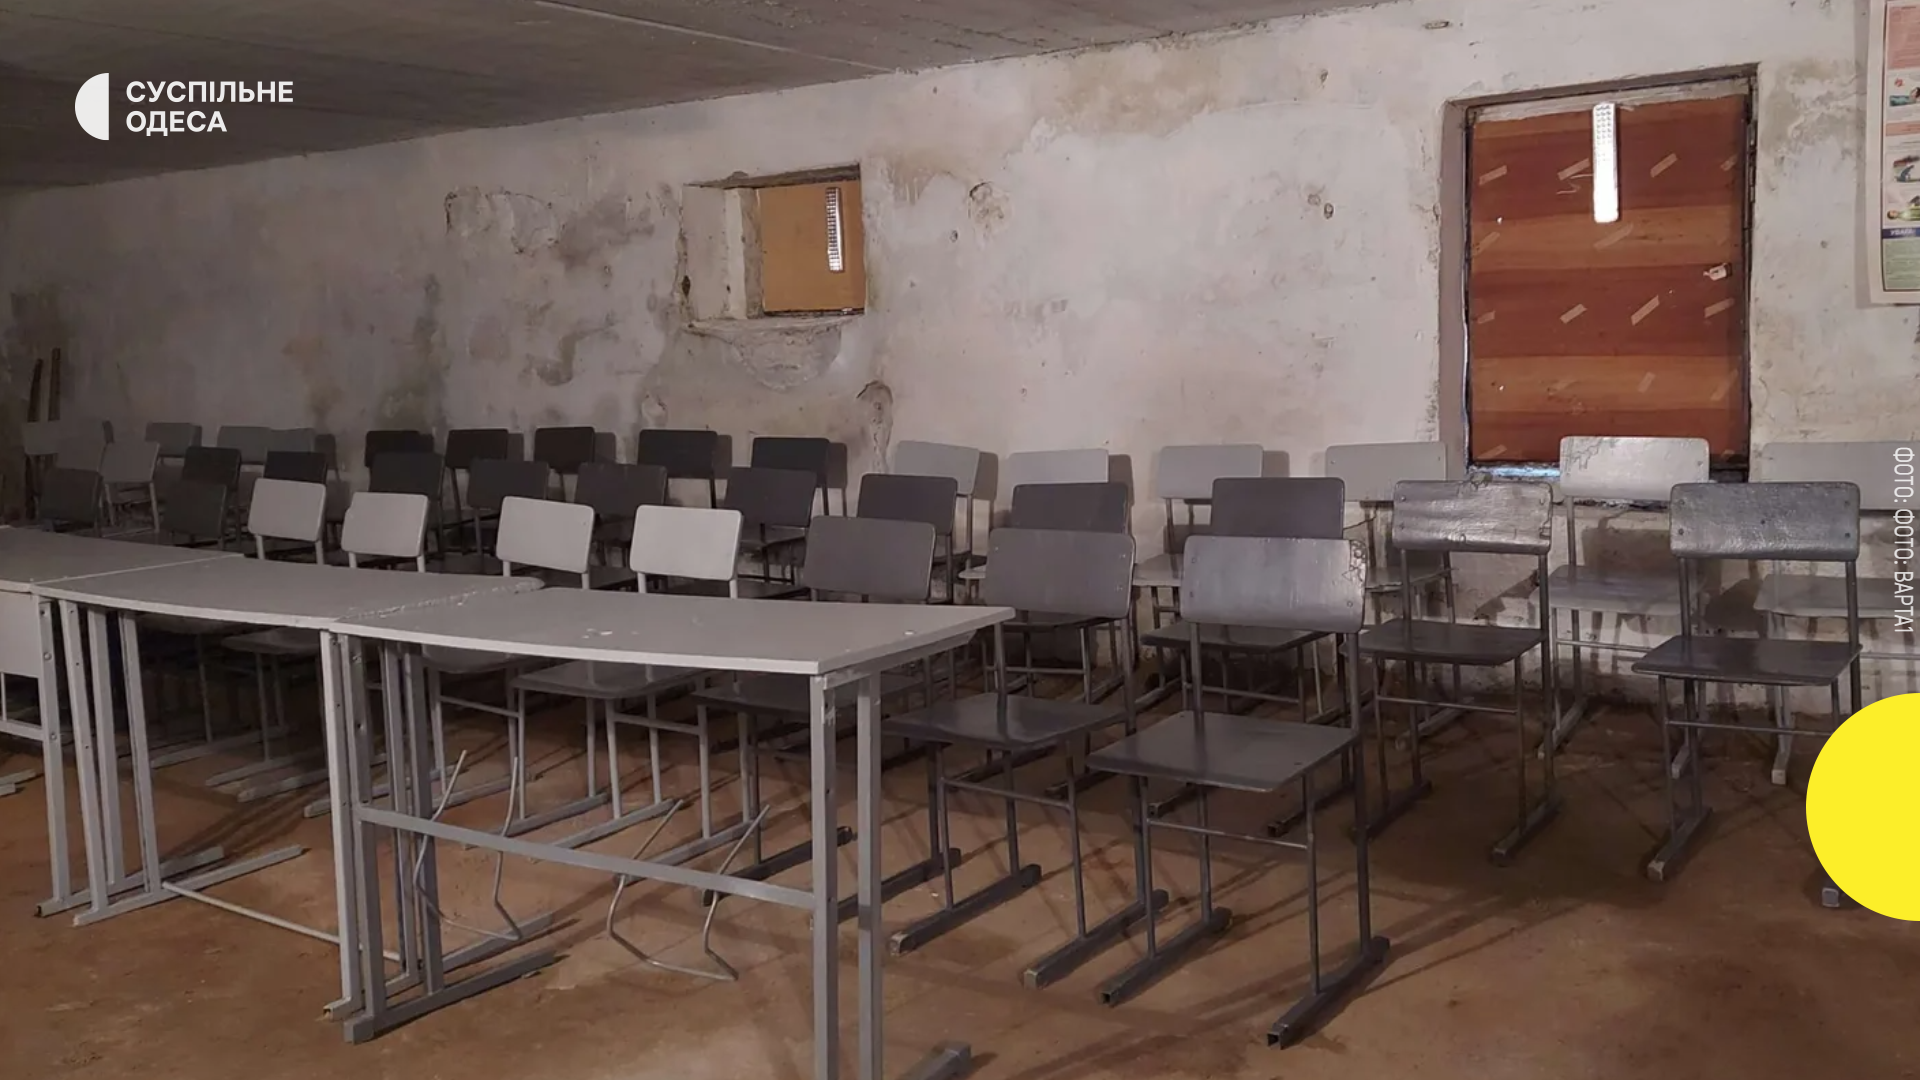 В Україні розроблять нові вимоги щодо сховищ у школах